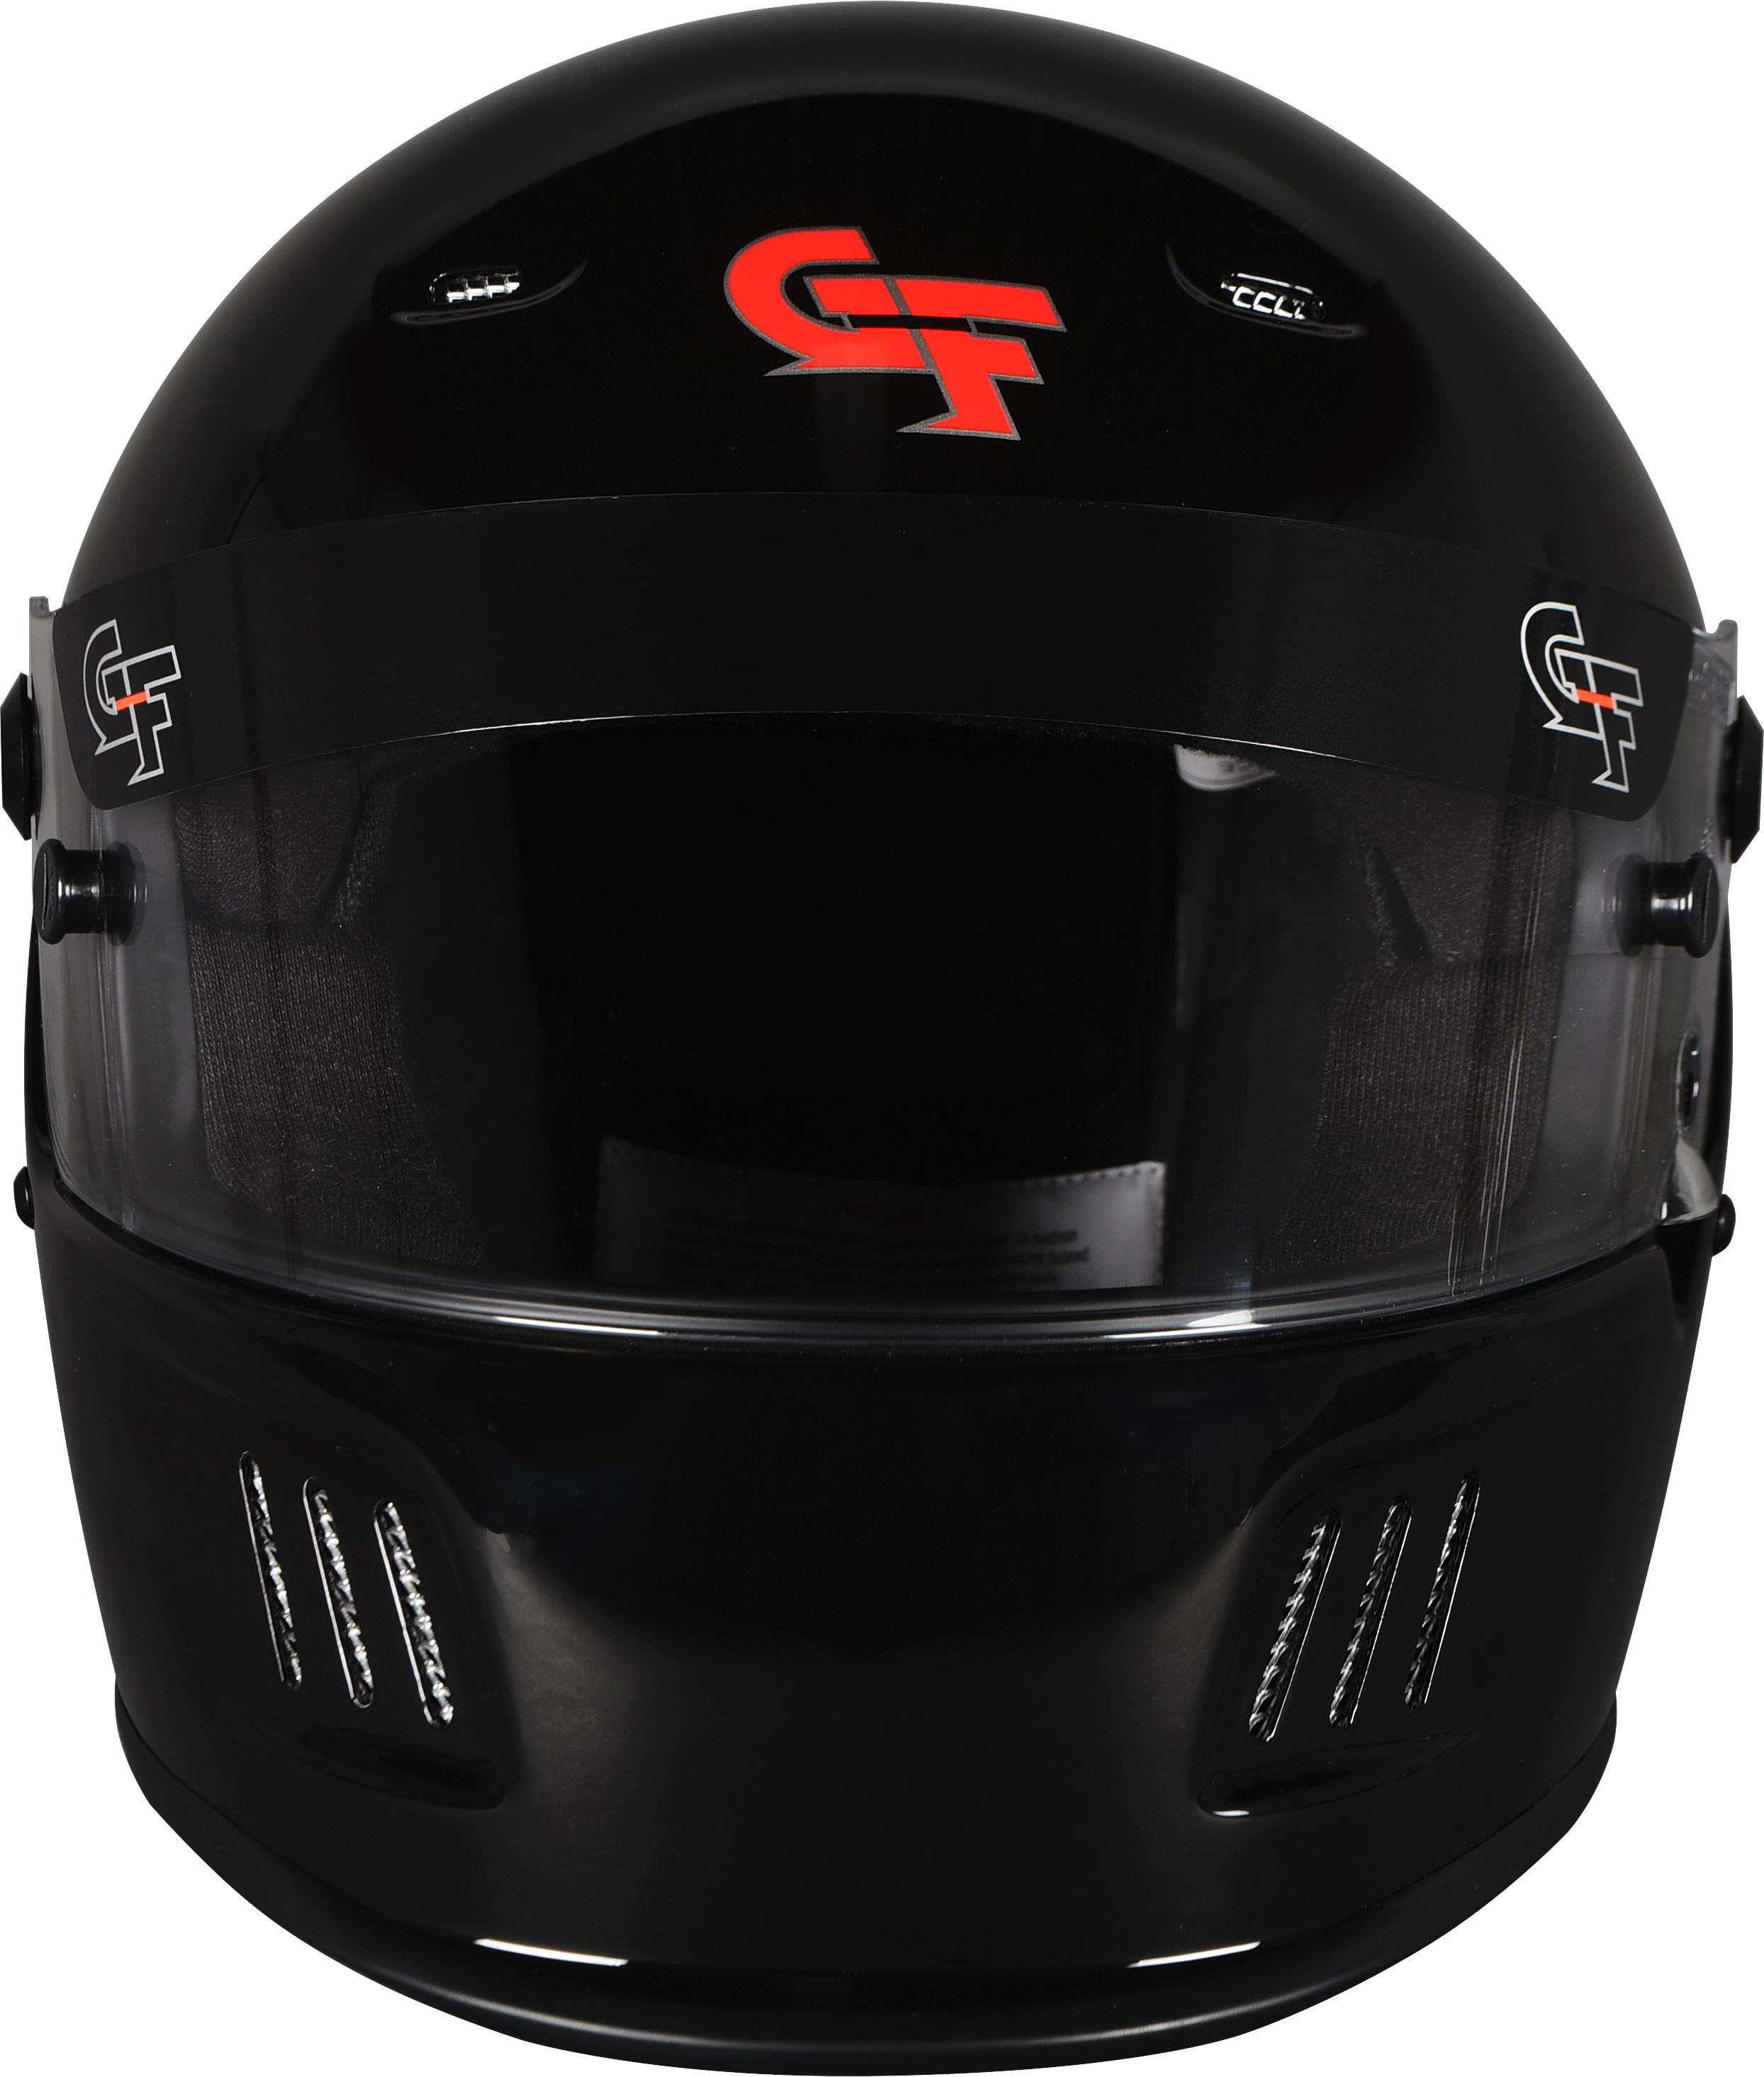 g force racing helmet